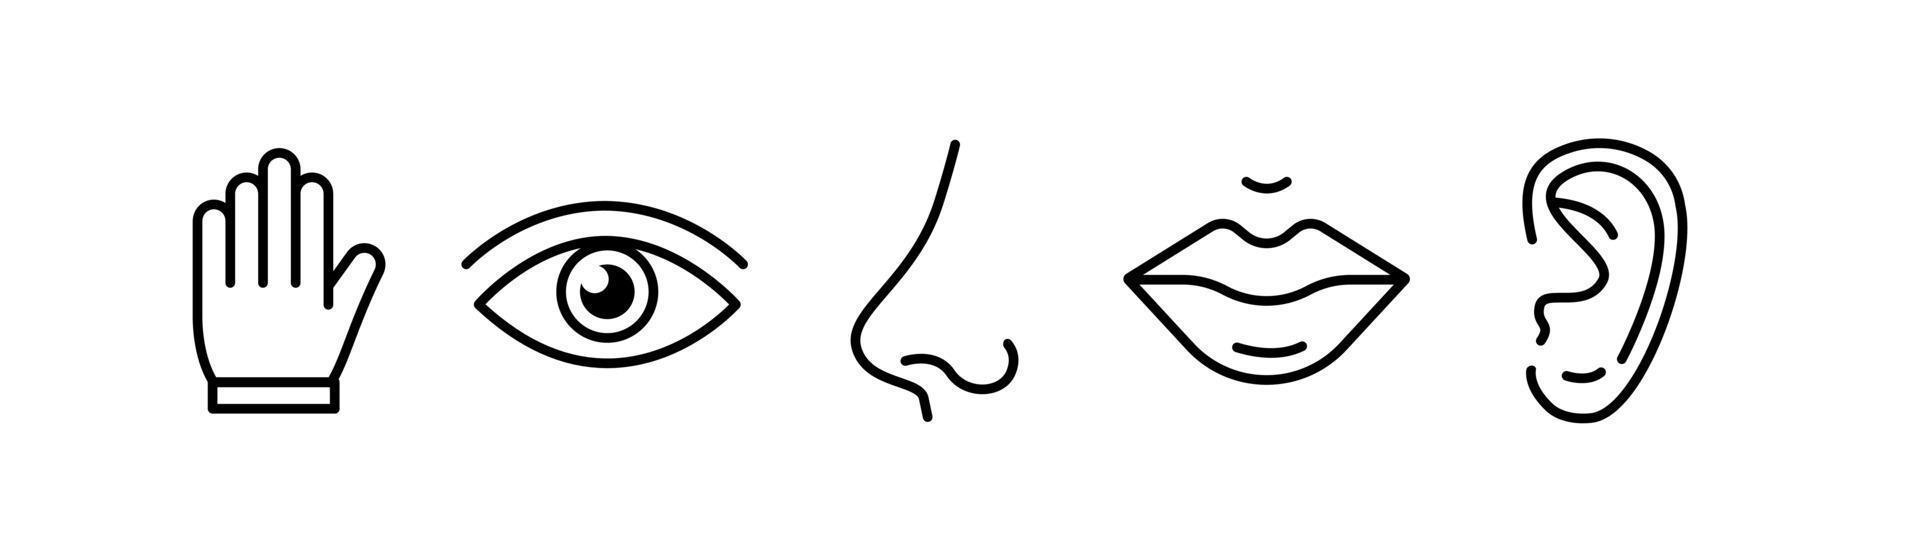 sensi umani cinque tipi. vista attraverso l'occhio, olfatto con il naso, gusto con la lingua. simboli disegnati icona. illustrazione vettoriale piatta isolata su sfondo bianco